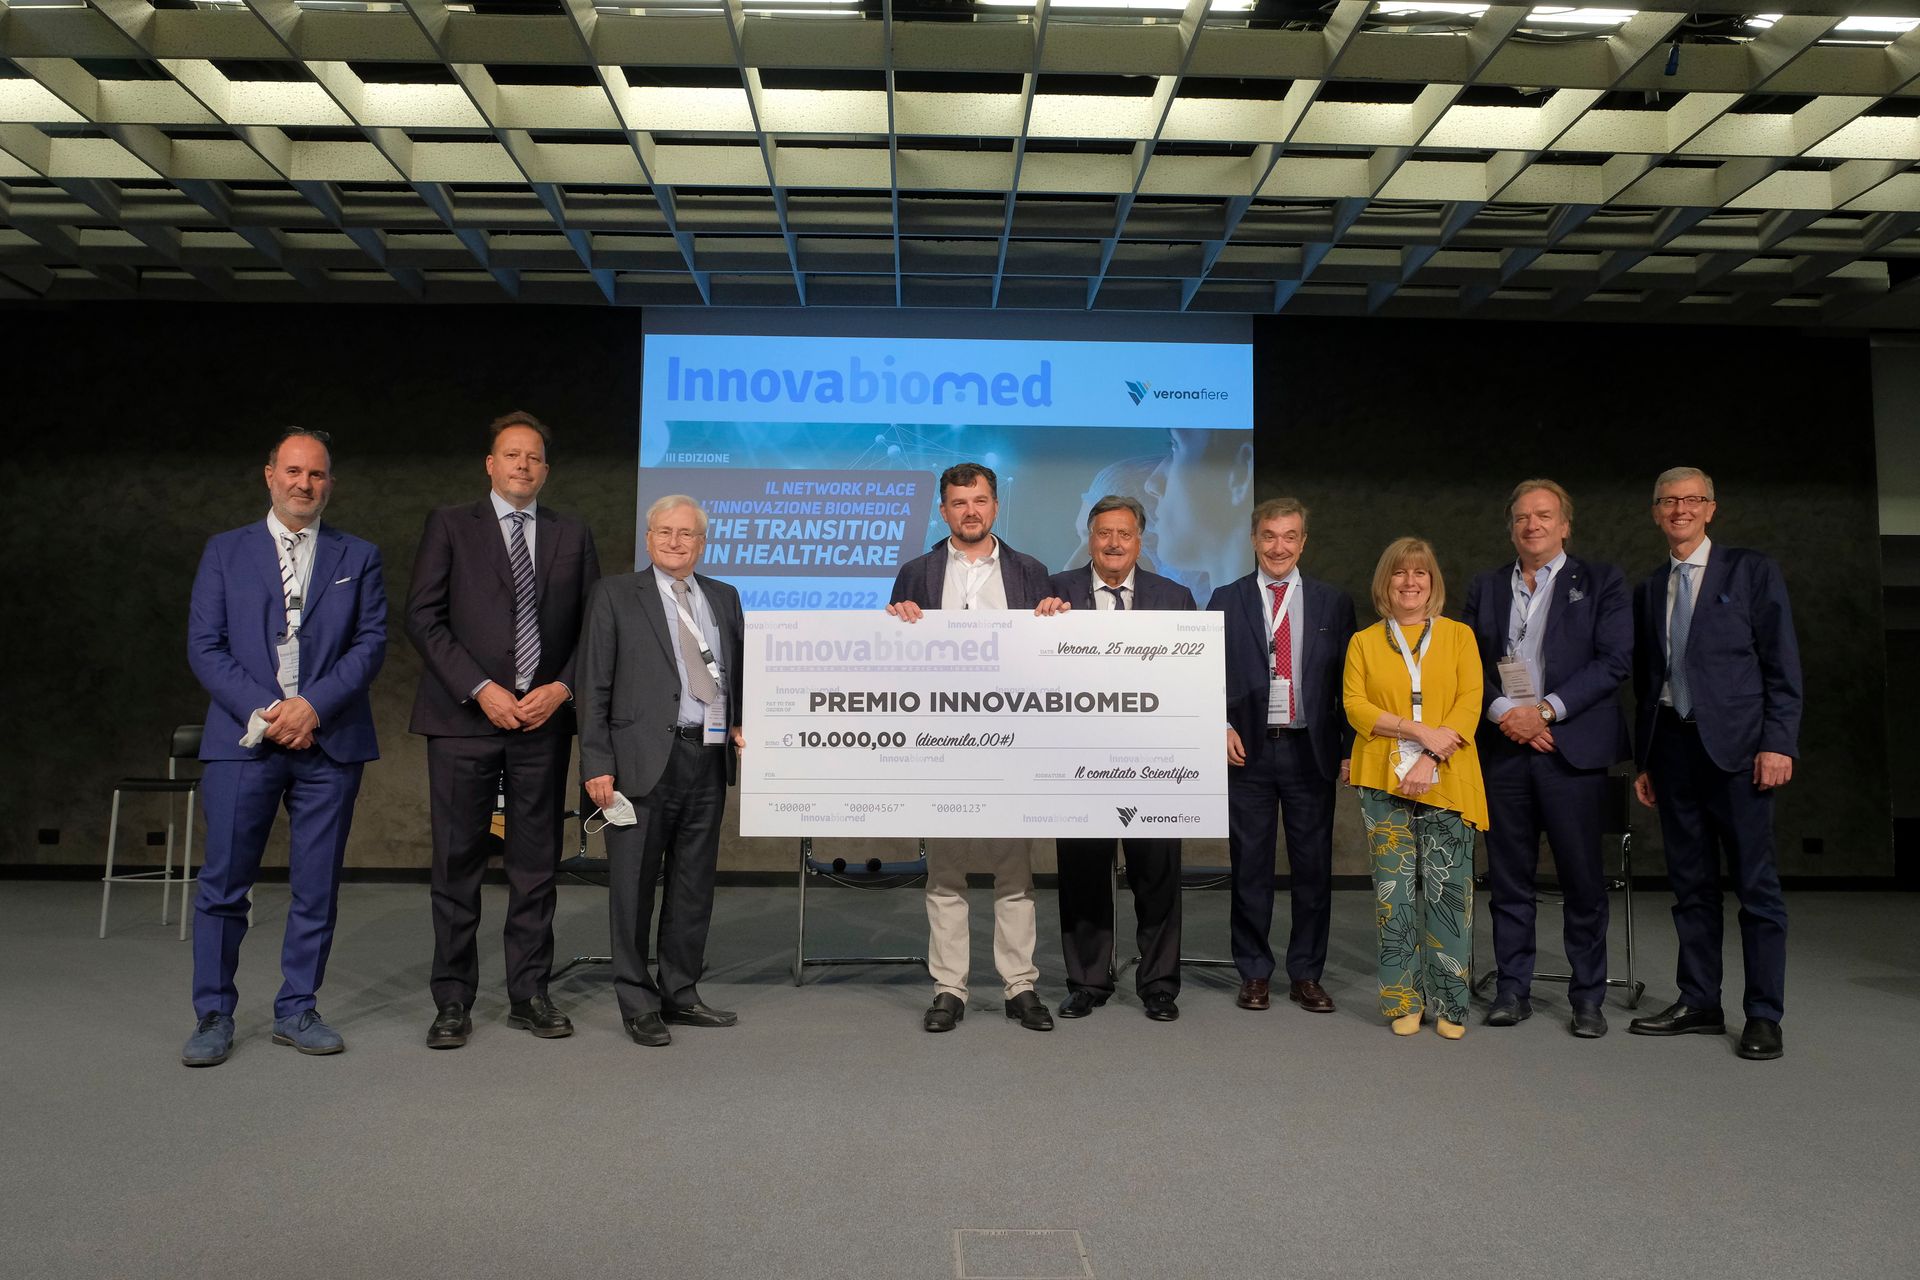 Il "Premio Innovabiomed" 2022, in collaborazione con Fondazione Cariverona, è stato assegnato alla 3DiFiC di Perugia ed è stato ritirato dal Managing Director, Alessandro Ricci